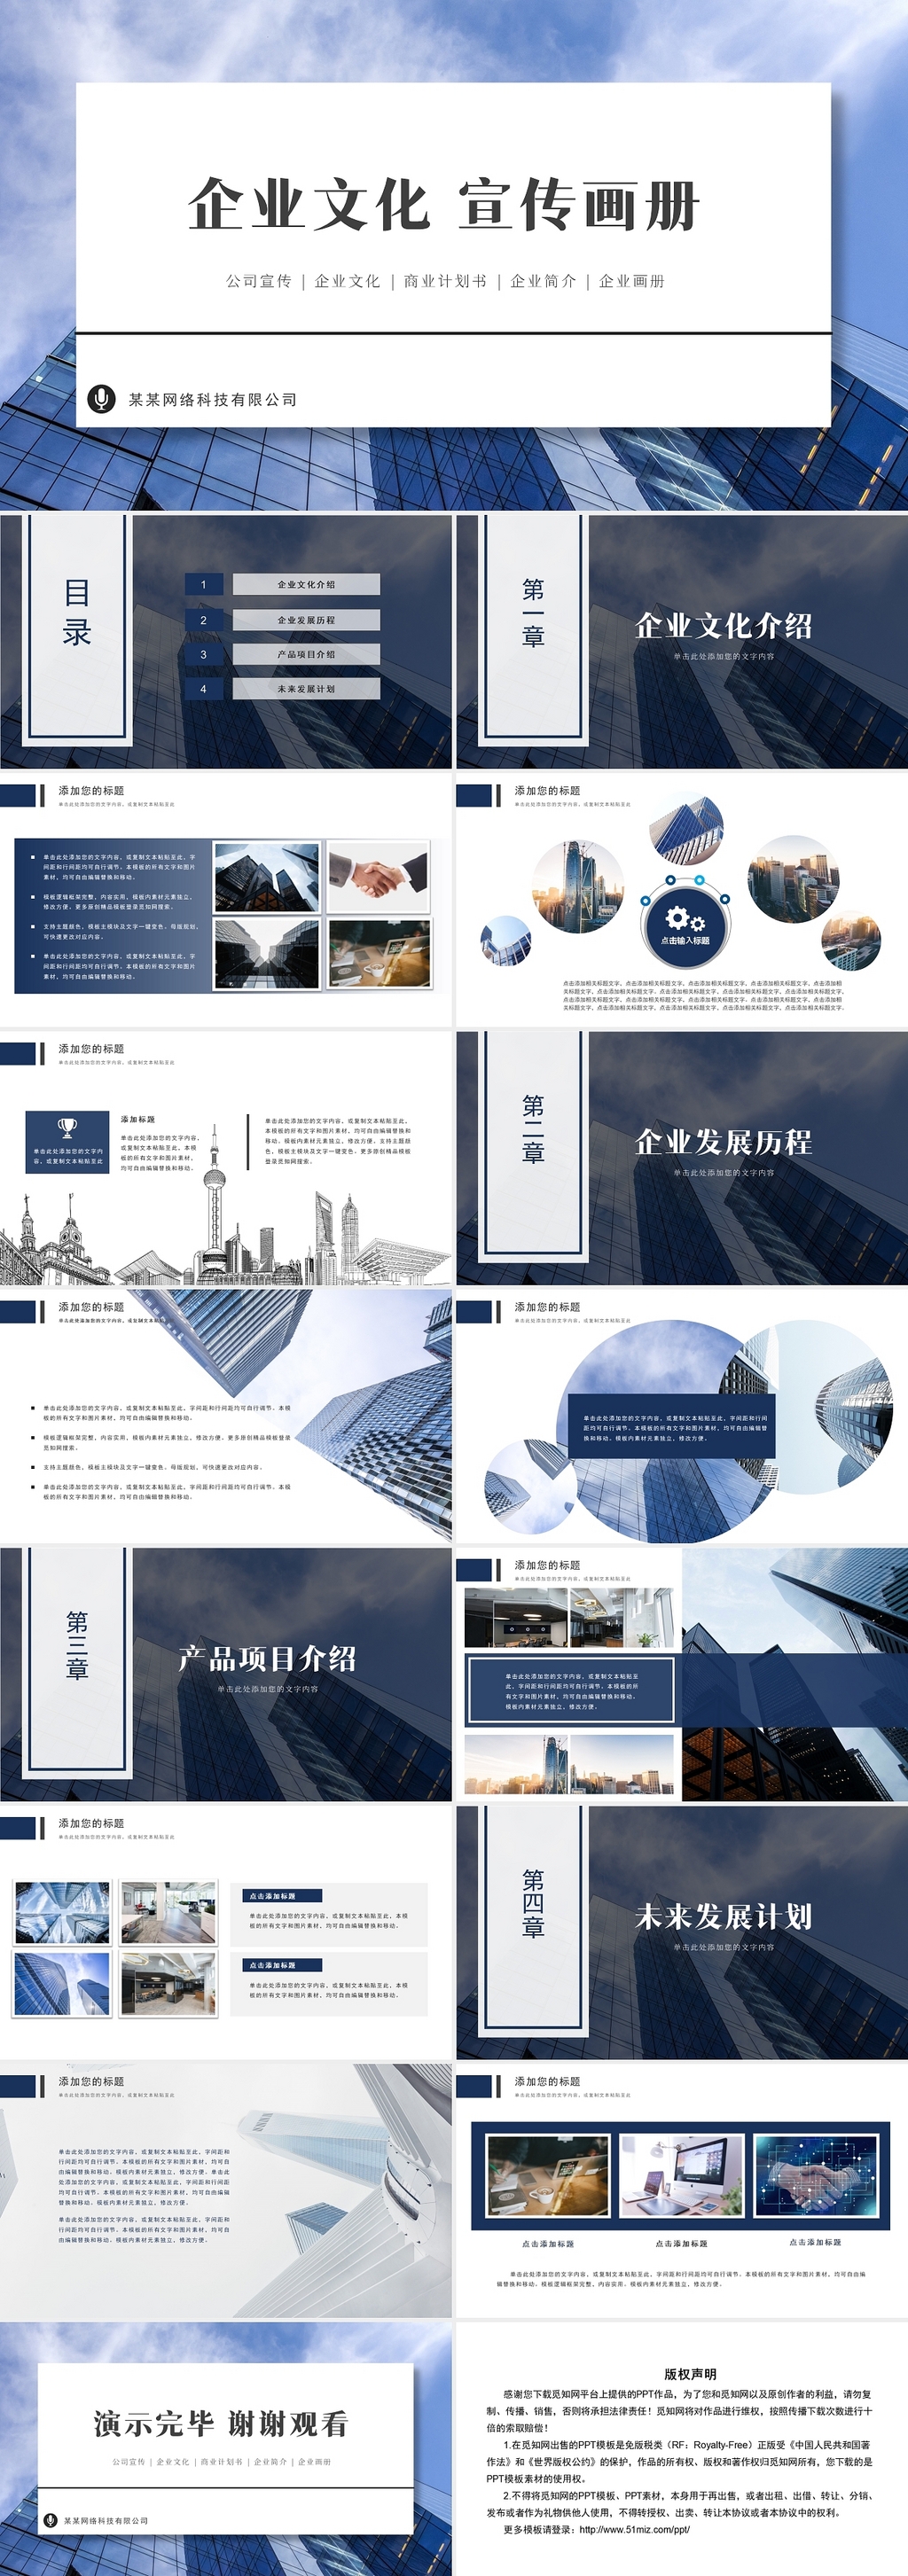 蓝色简约商务风企业文化宣传画册公司介绍PPT模板企业画册